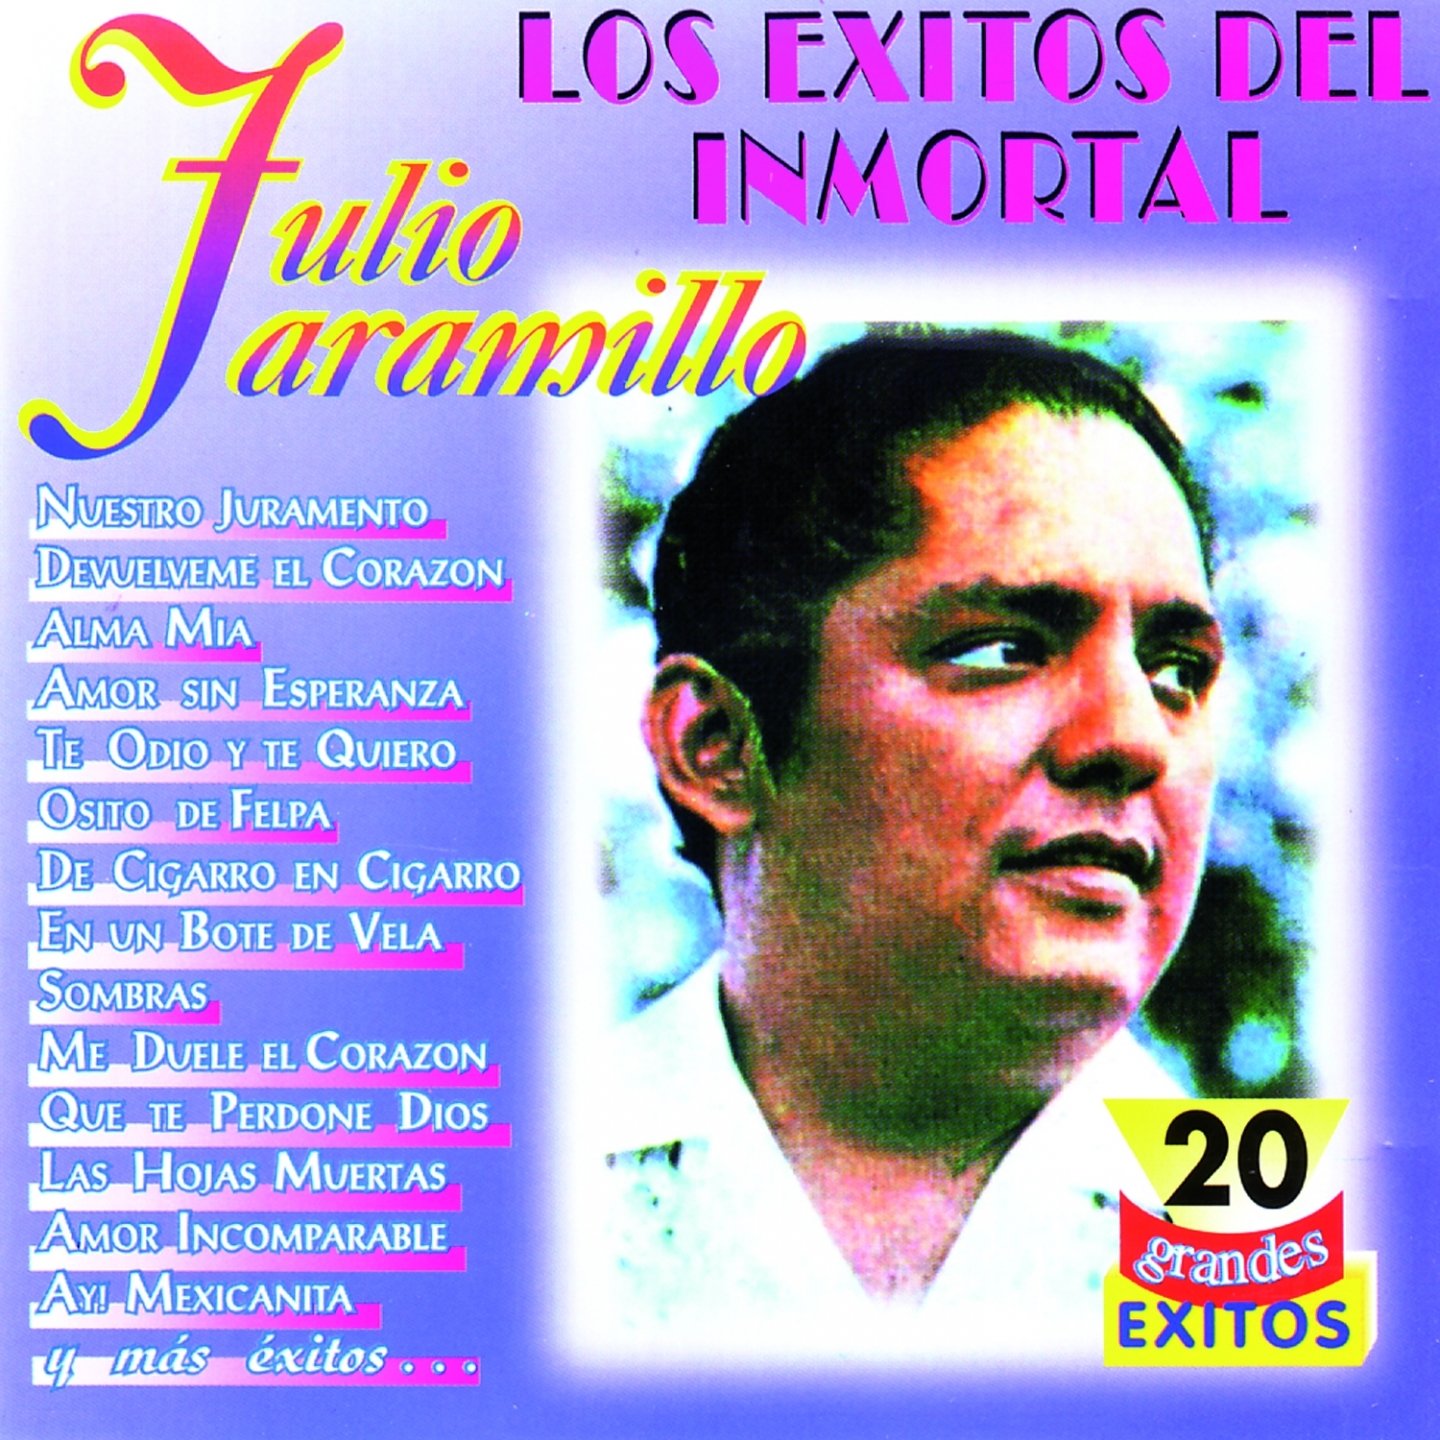 Los Éxitos del Inmortal Julio Jaramillo (20 Grandes Éxitos) — Julio  Jaramillo | Last.fm